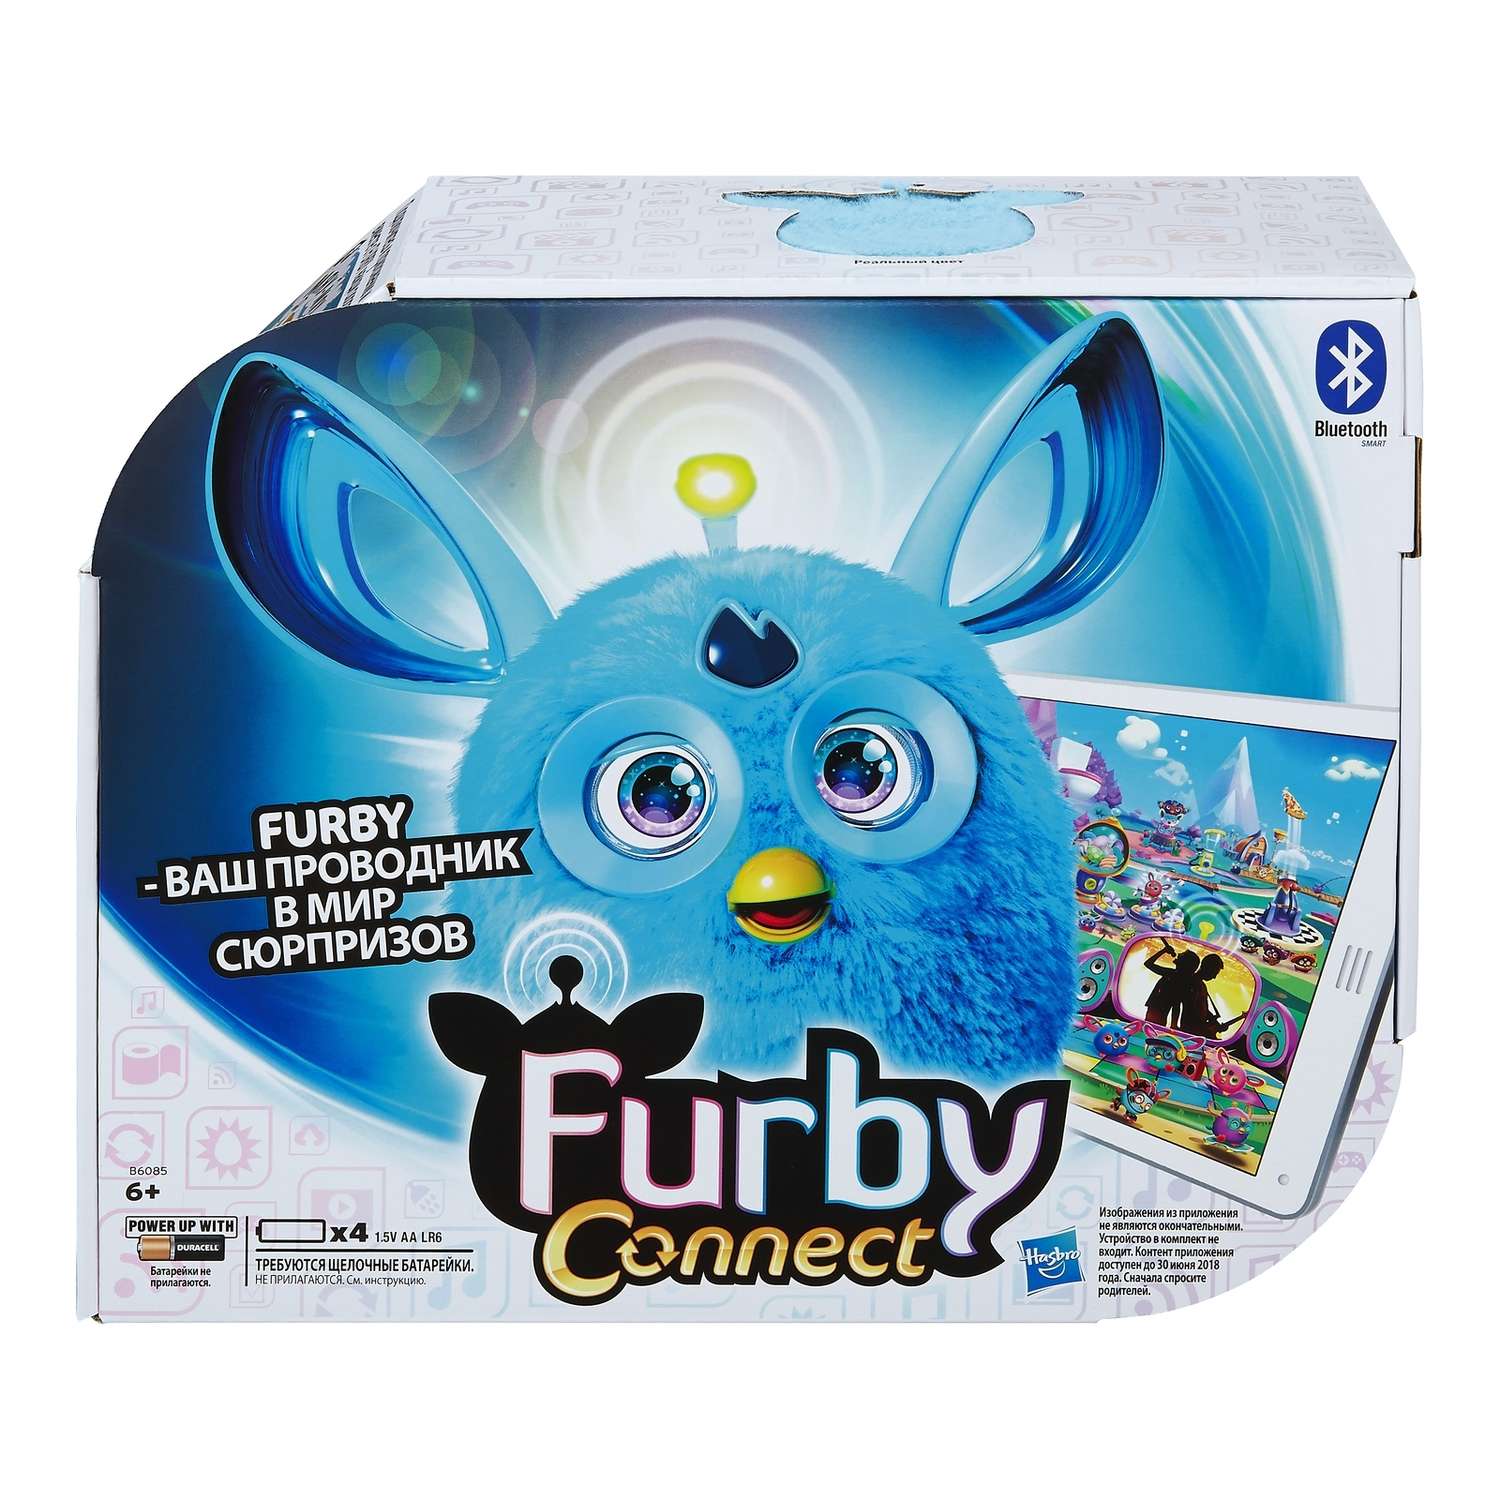 Коннект Furby Темные цвета Голубой - фото 2